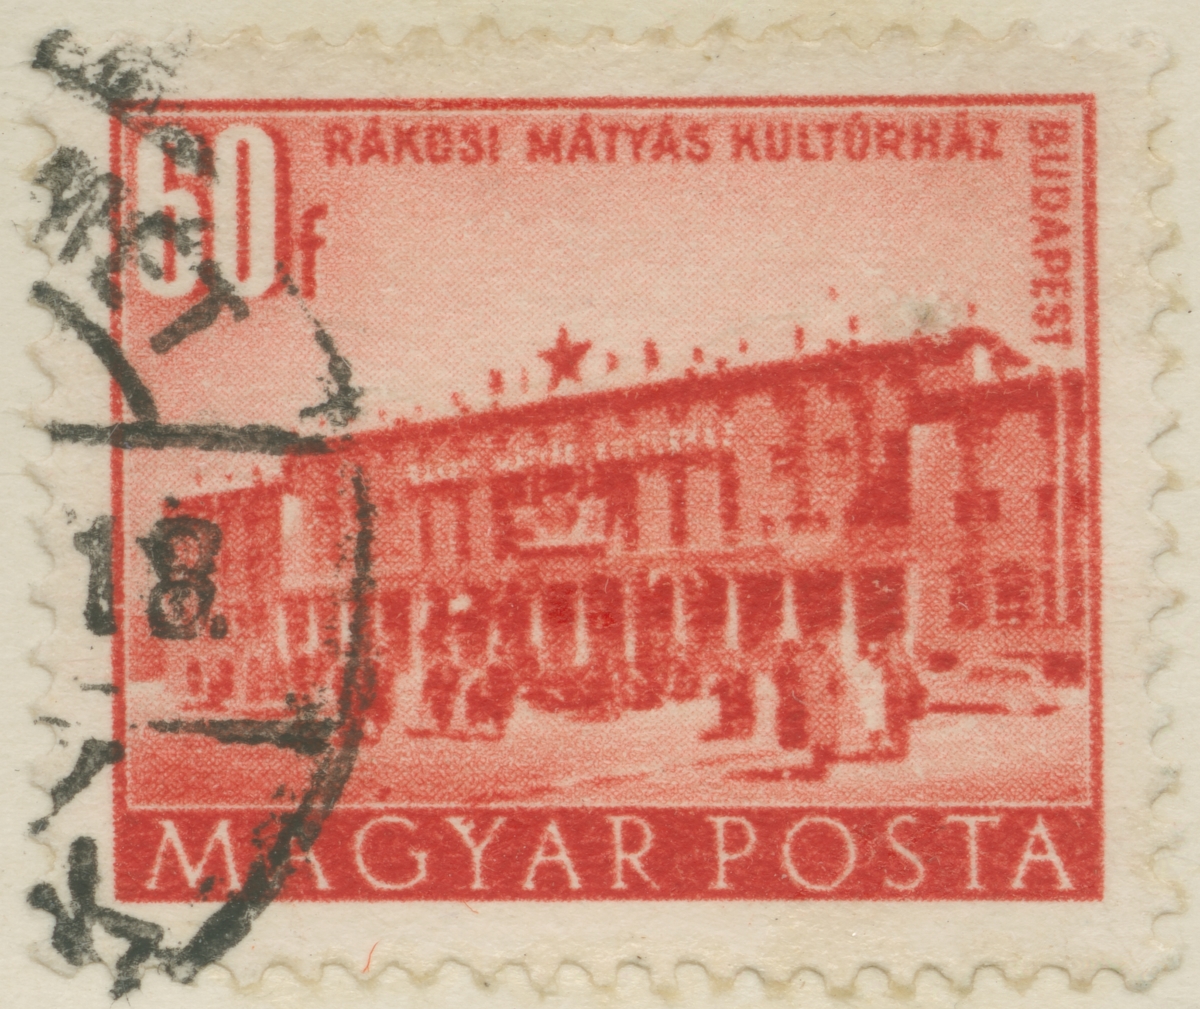 Frimärke ur Gösta Bodmans filatelistiska motivsamling, påbörjad 1950.
Frimärke från Ungern, 1953. Motiv av Kulturmuseum i Budapest.